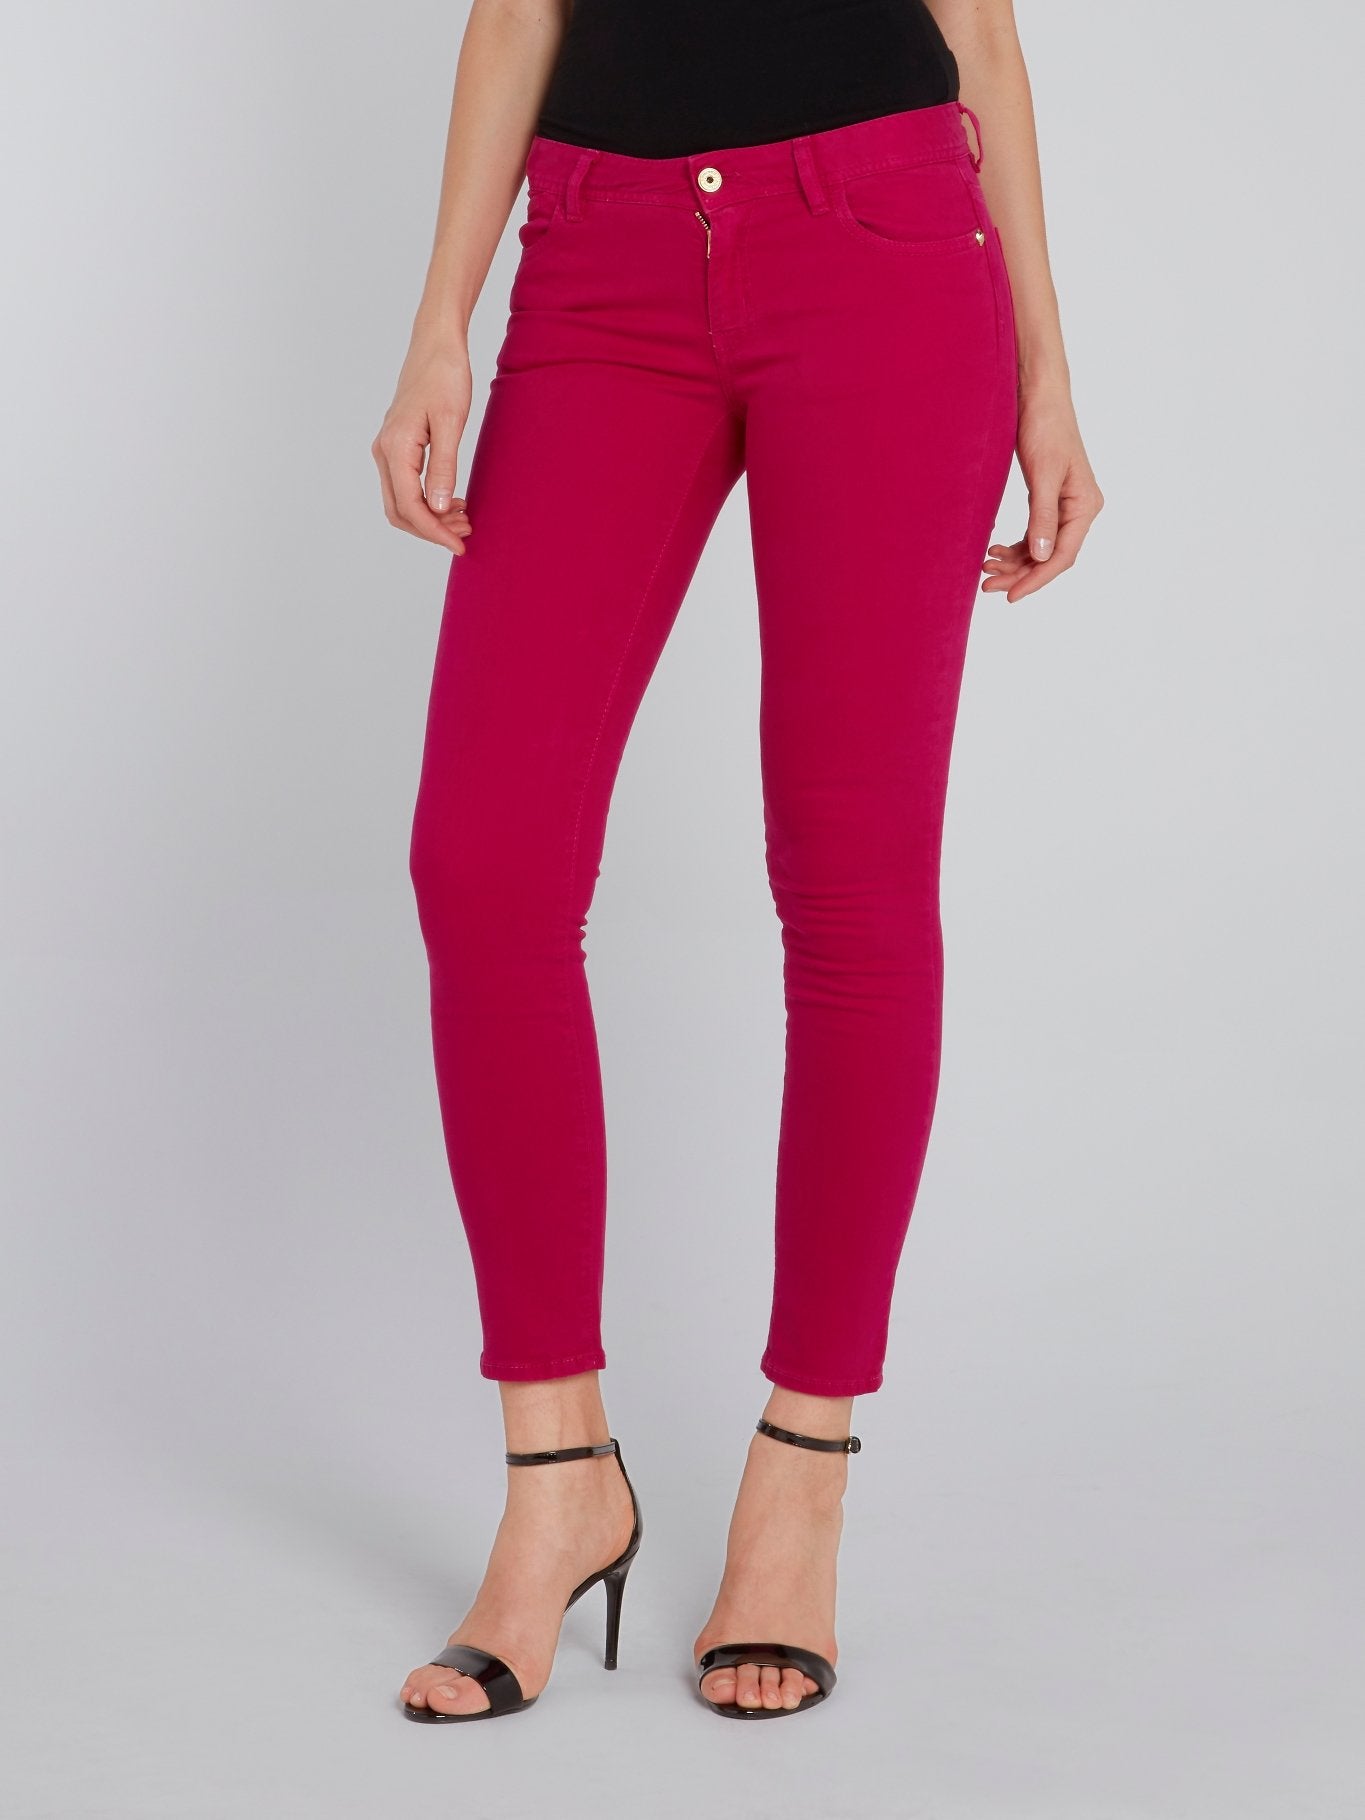 Pink Skinny Capri Pants